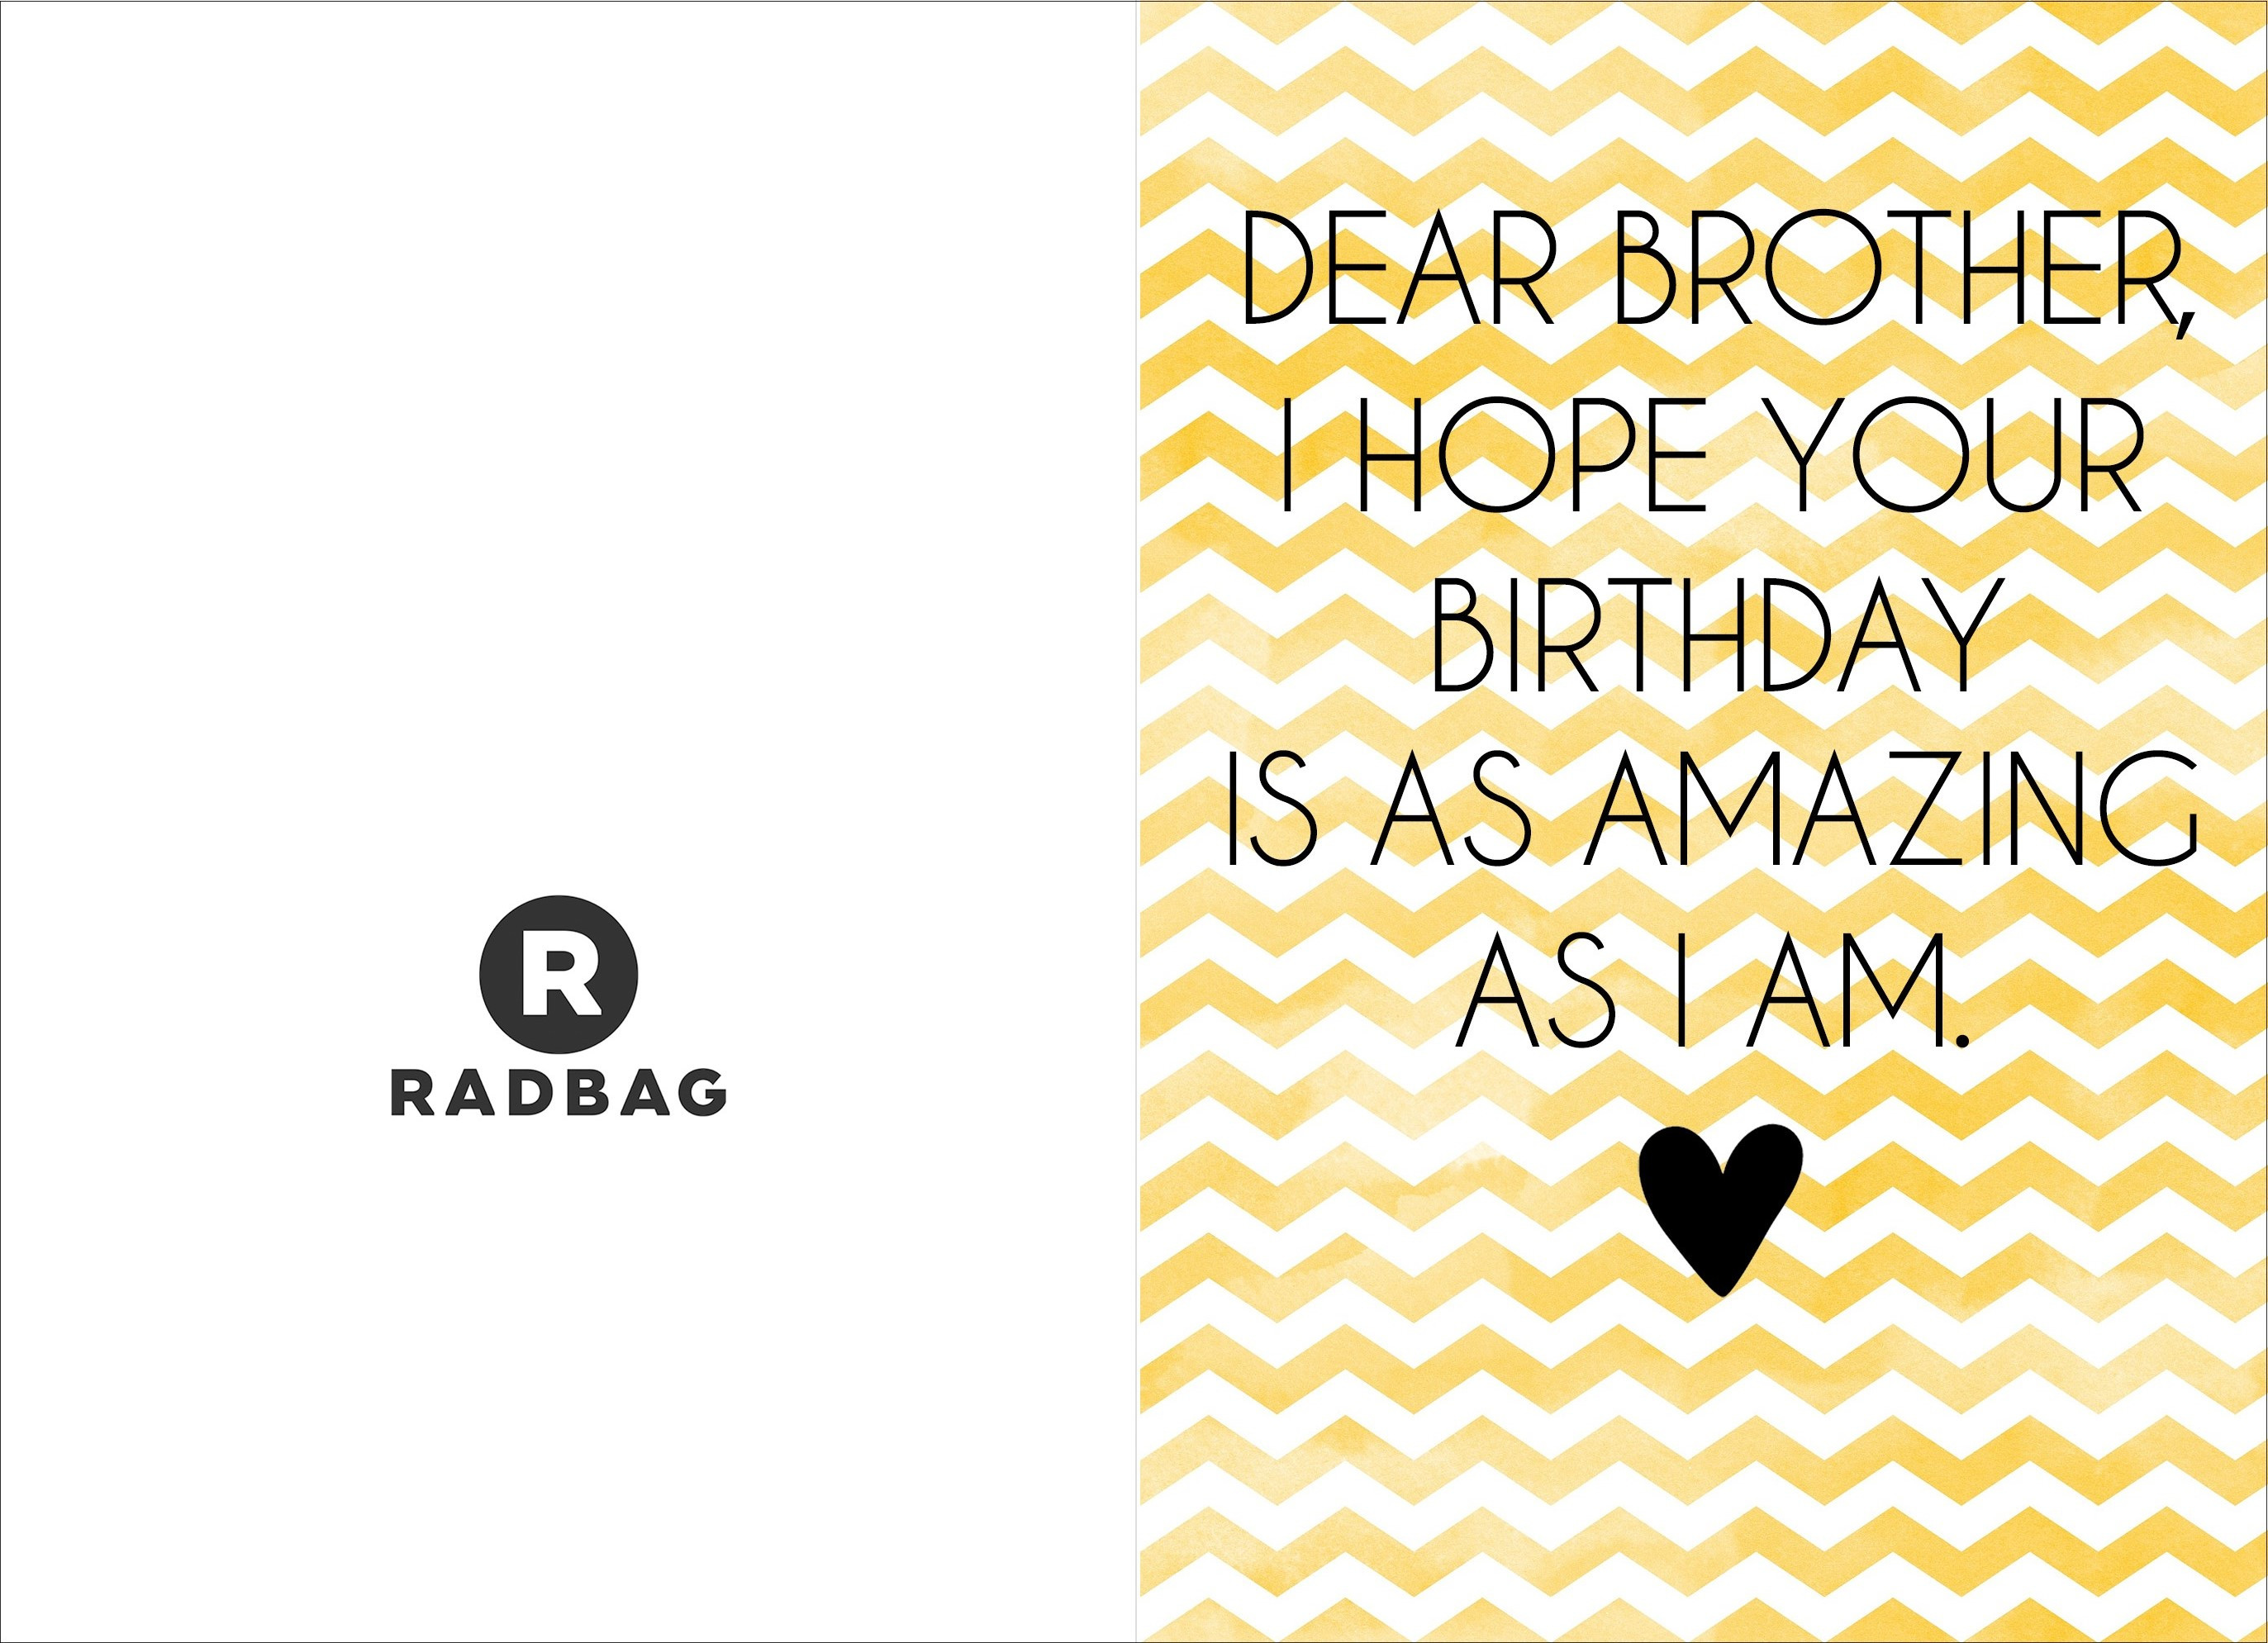 Lustige Geburtstagskarten Zum Ausdrucken Kostenlos
 Witzige Geburtstagskarten zum Ausdrucken radbag